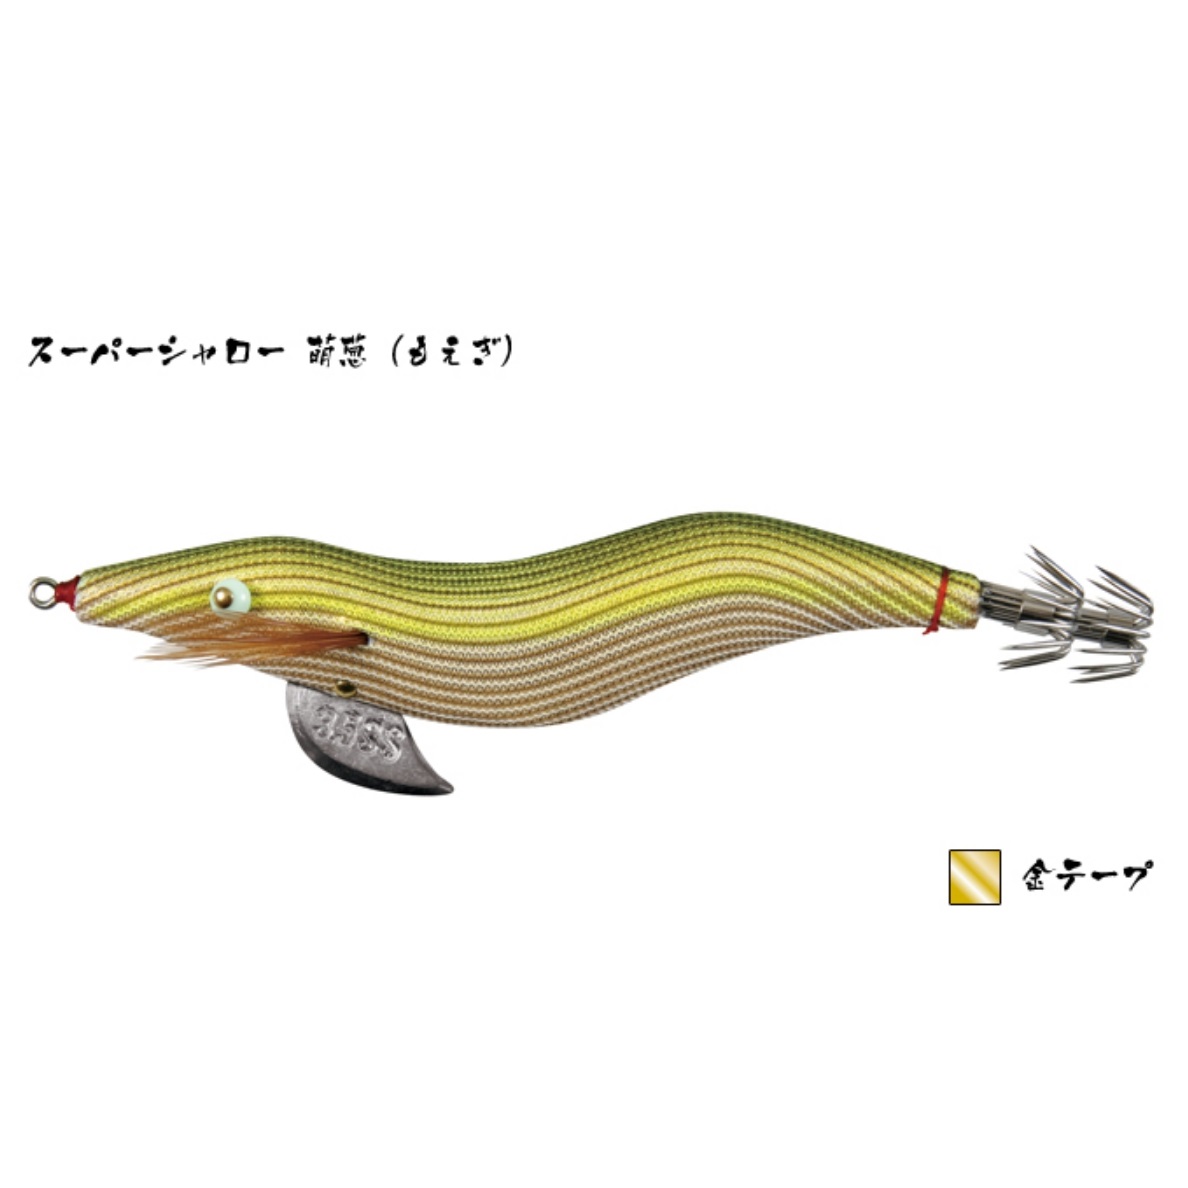 林釣漁具製作所/HAYASHI 餌木猿 SS 3.5号 スーパーシャロースロー